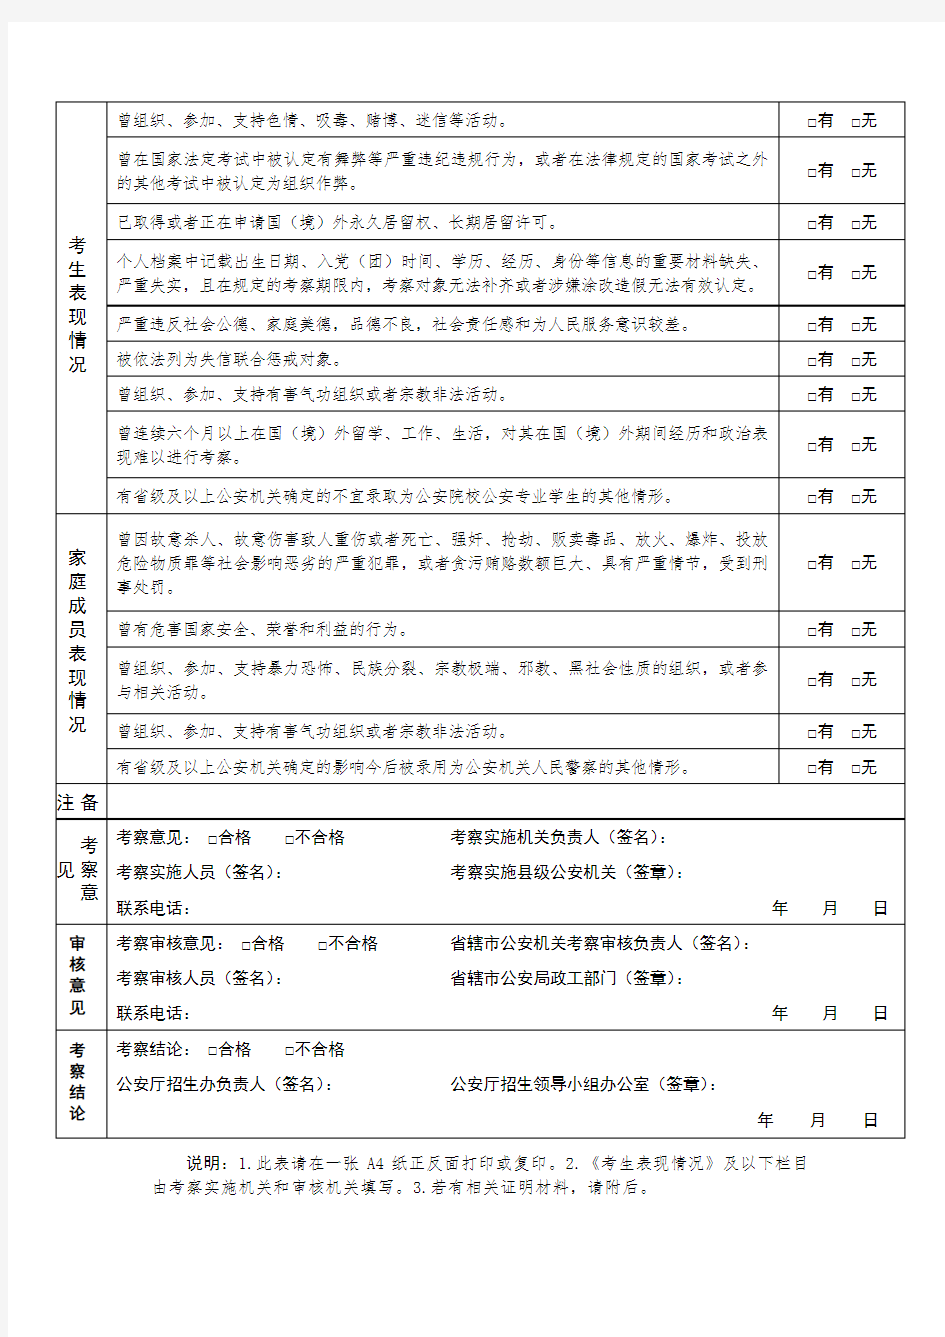 河南省2020年公安院校公安专业招生考察表